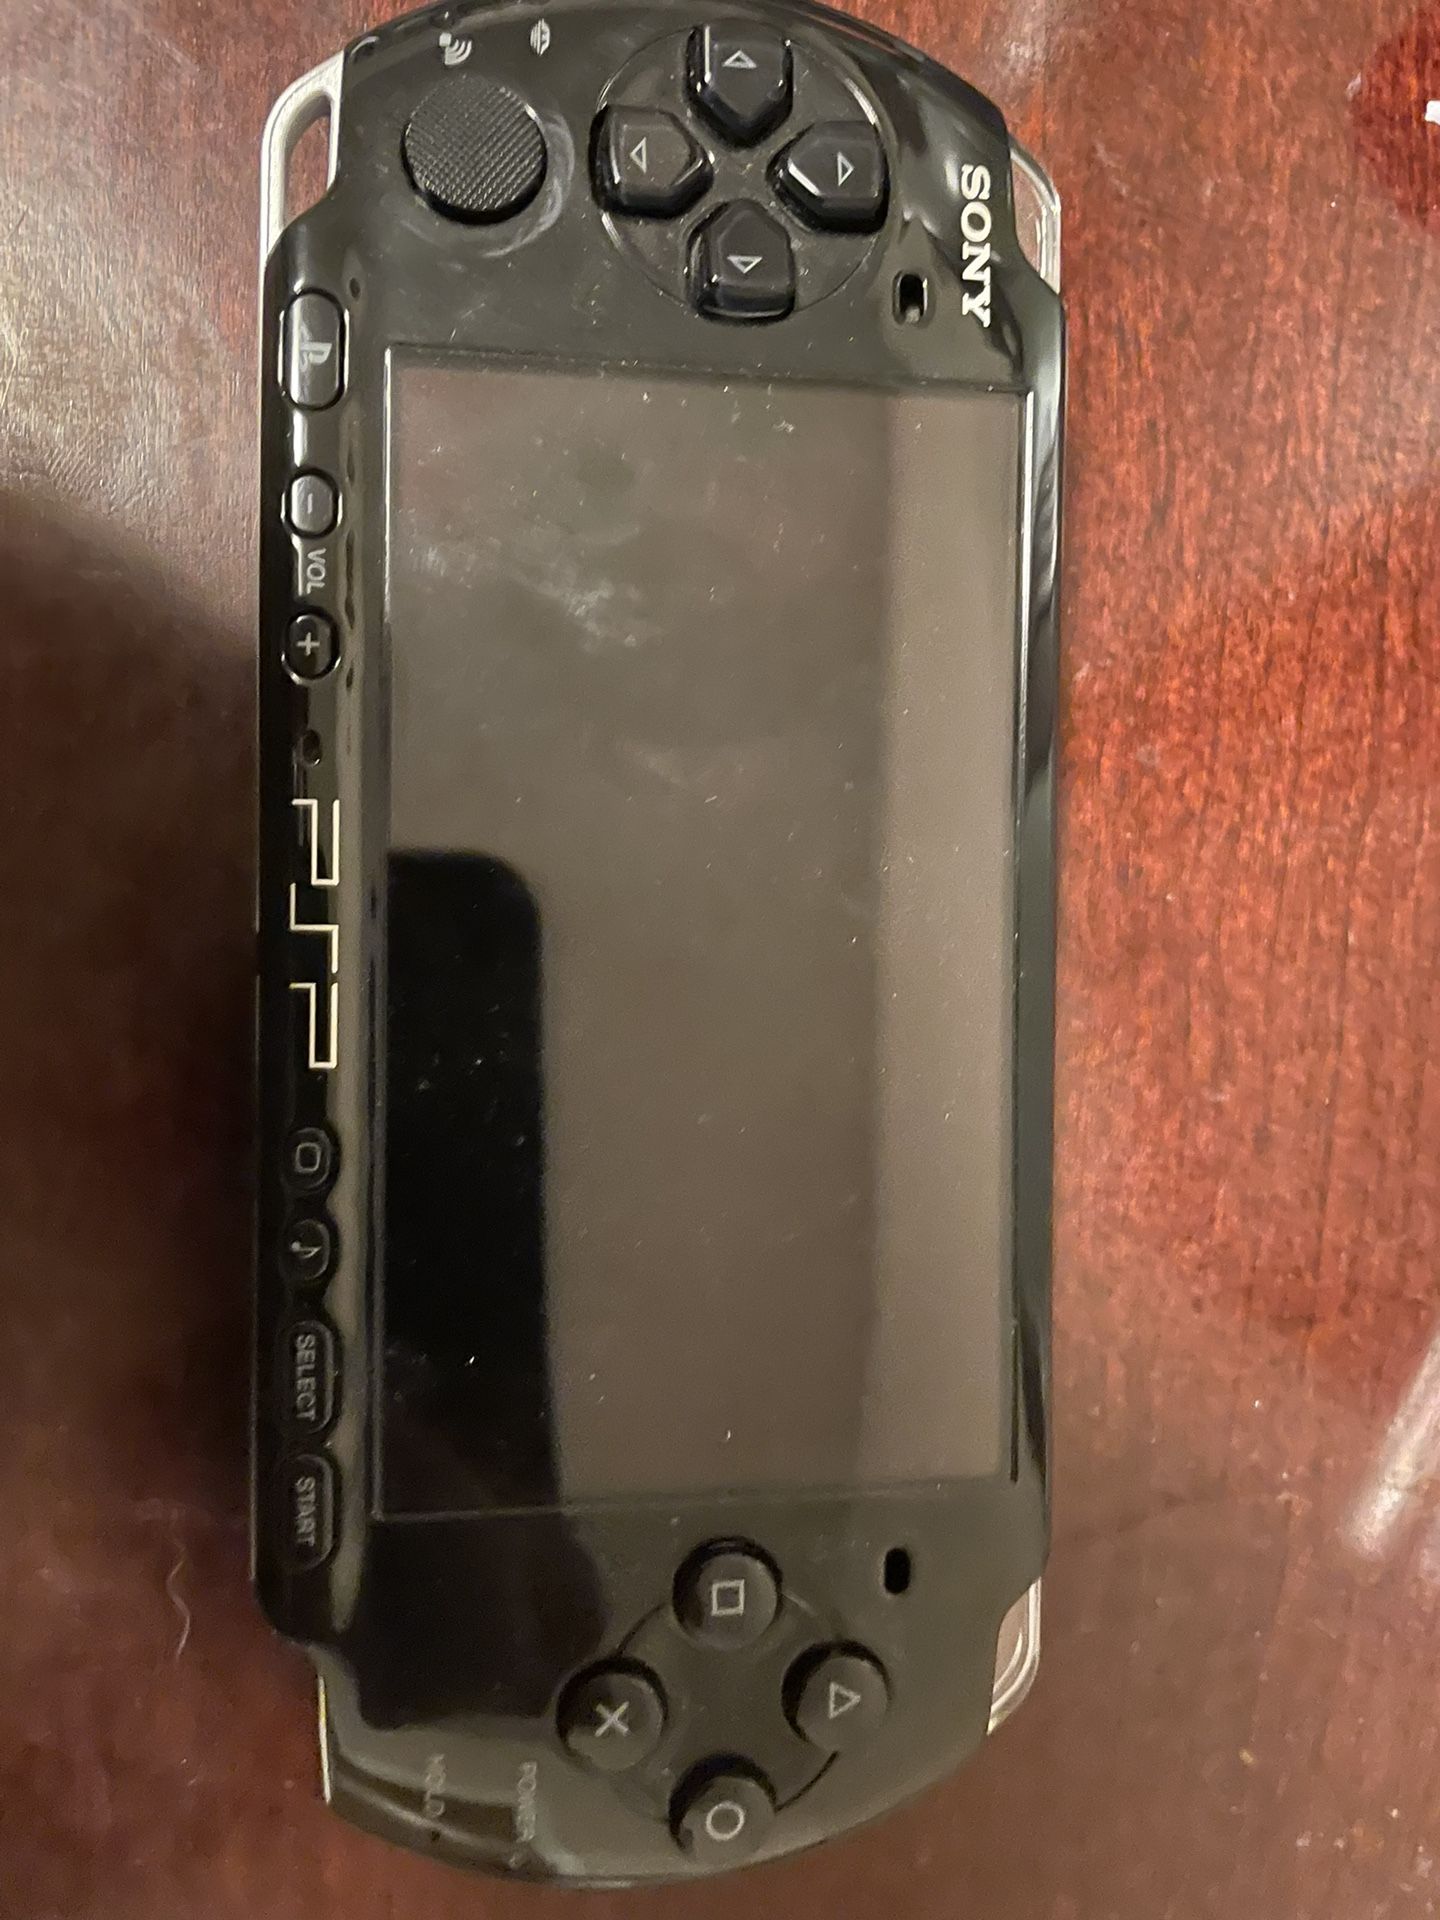 PSP 3000 